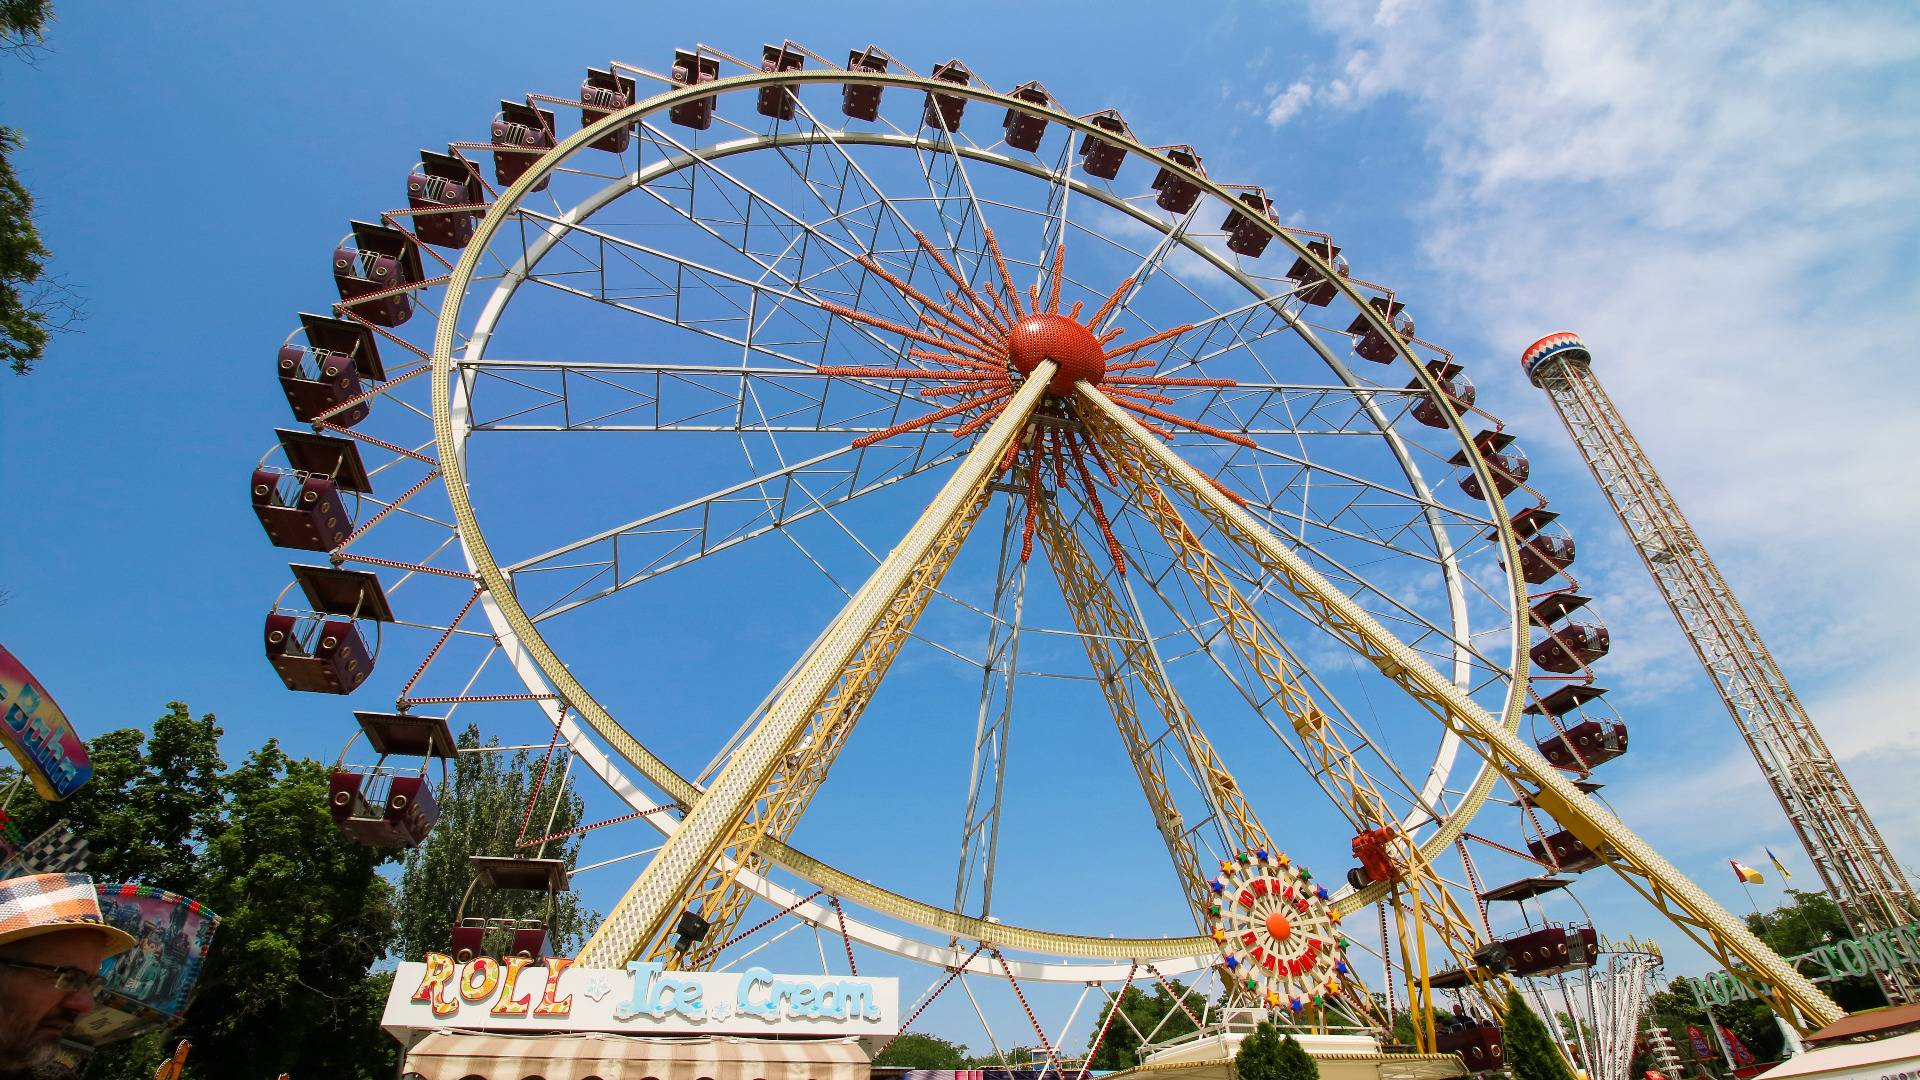 Amusement Park. Photo by Wander Spot Explore ©